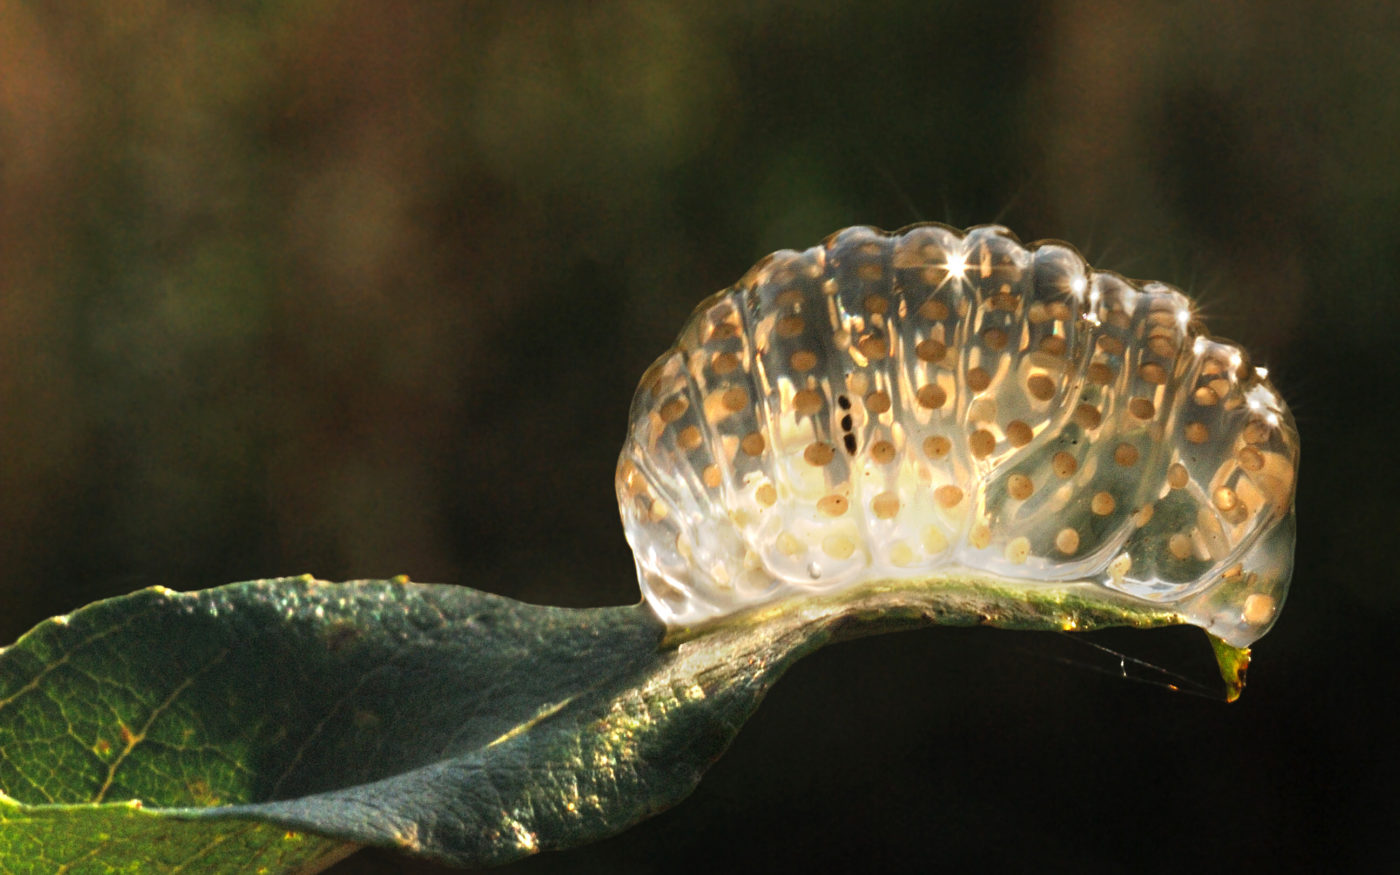 Caddis fly egg mass on leaf overhanging water